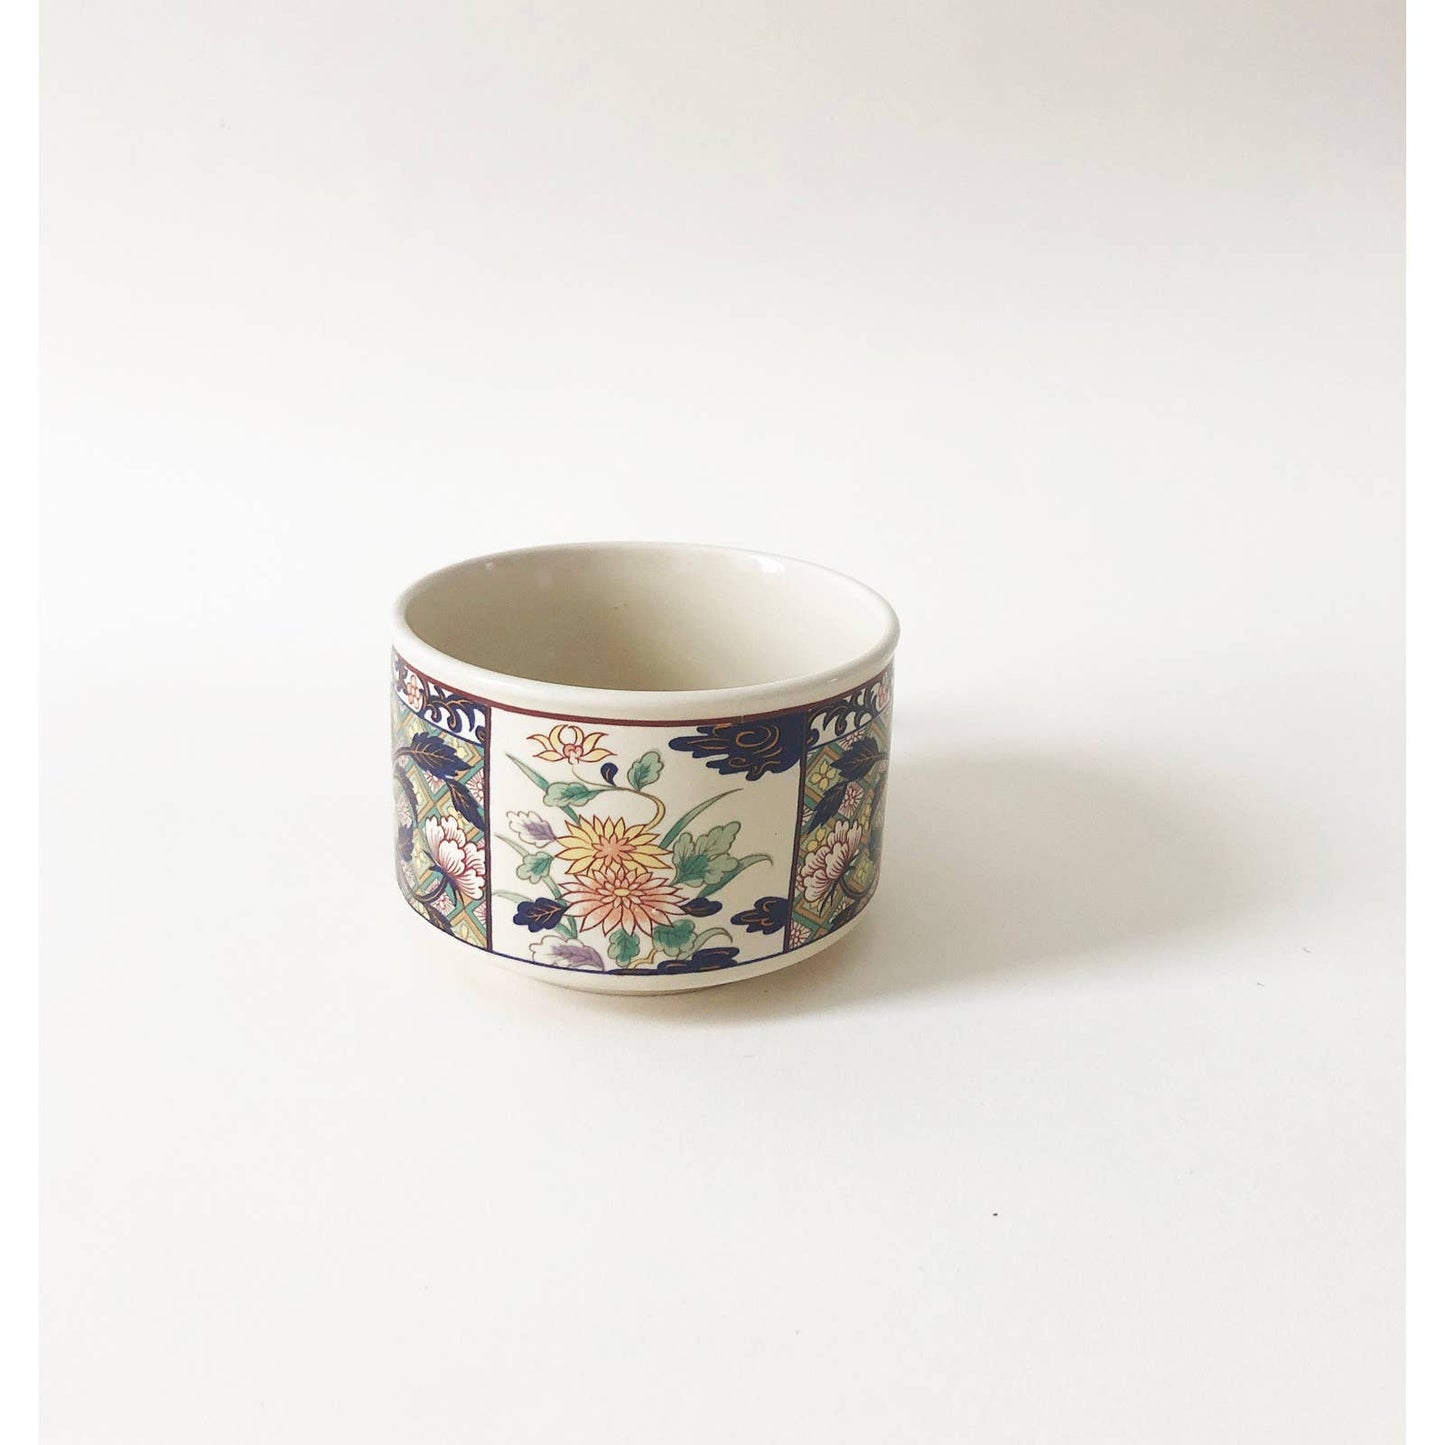 Vintage Ceramic Japanese Mug